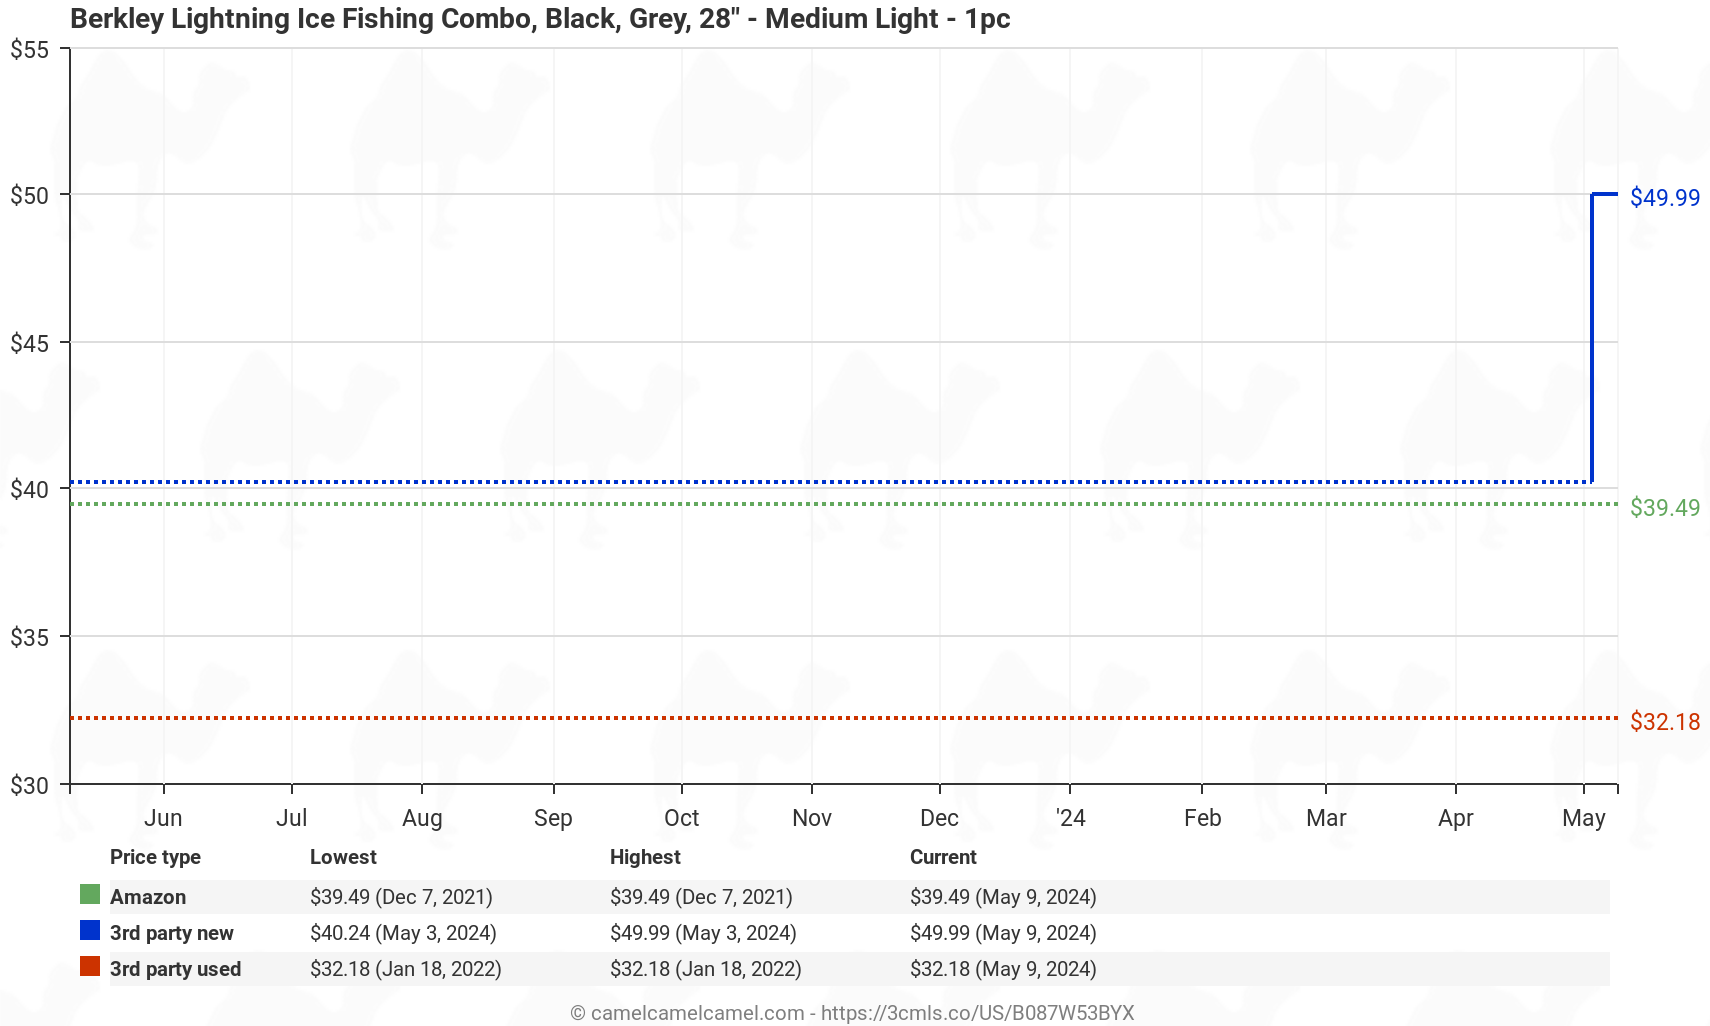 Berkley Lightning Ice Fishing Combo, Black, Grey, 28" - Medium Light - 1pc - Price History: B087W53BYX